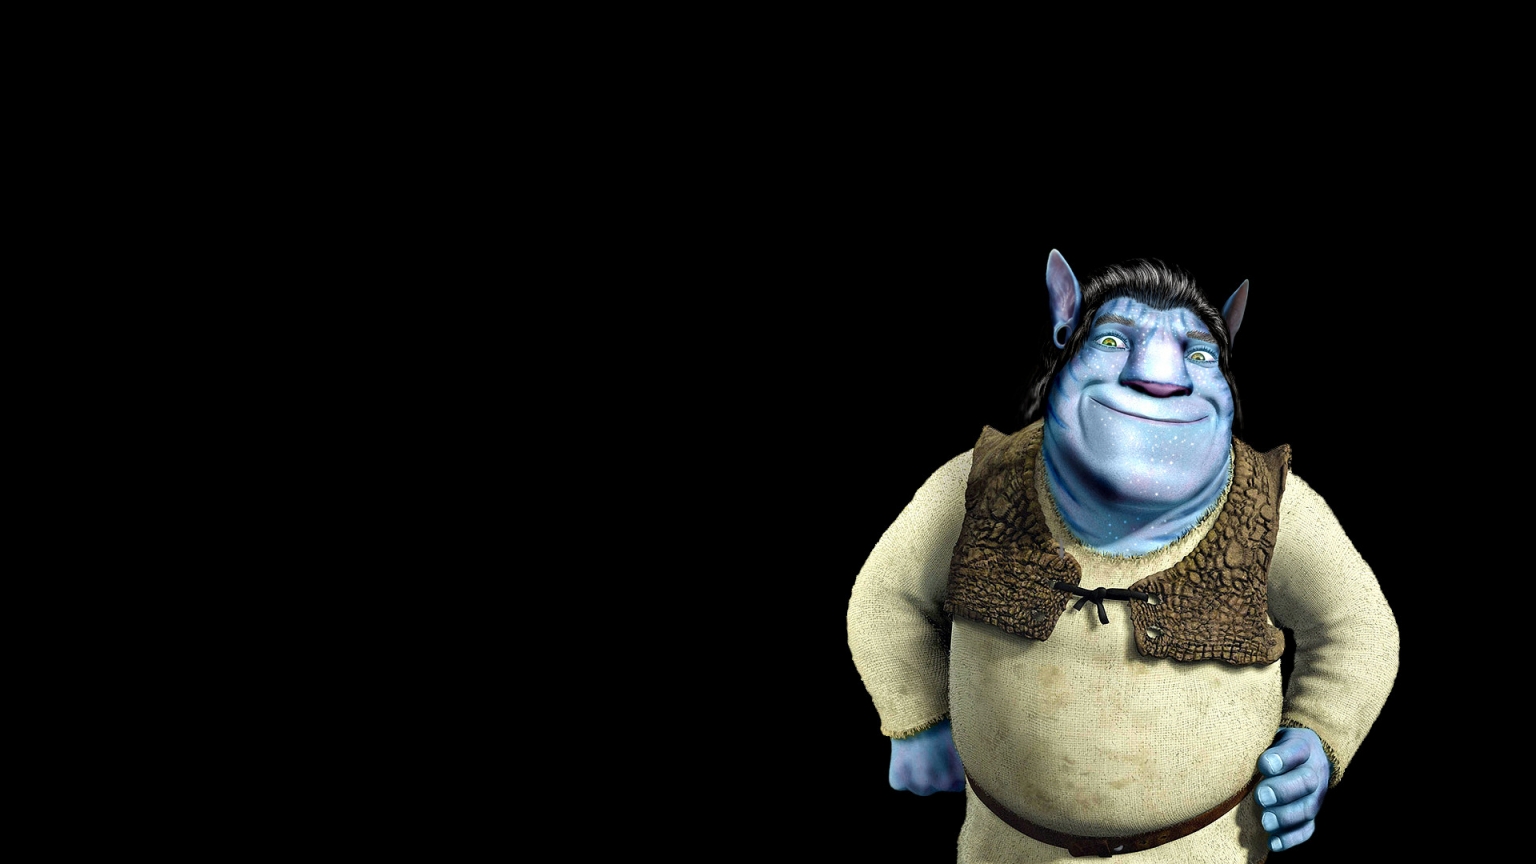 Shrek Avatar for 1536 x 864 HDTV resolution